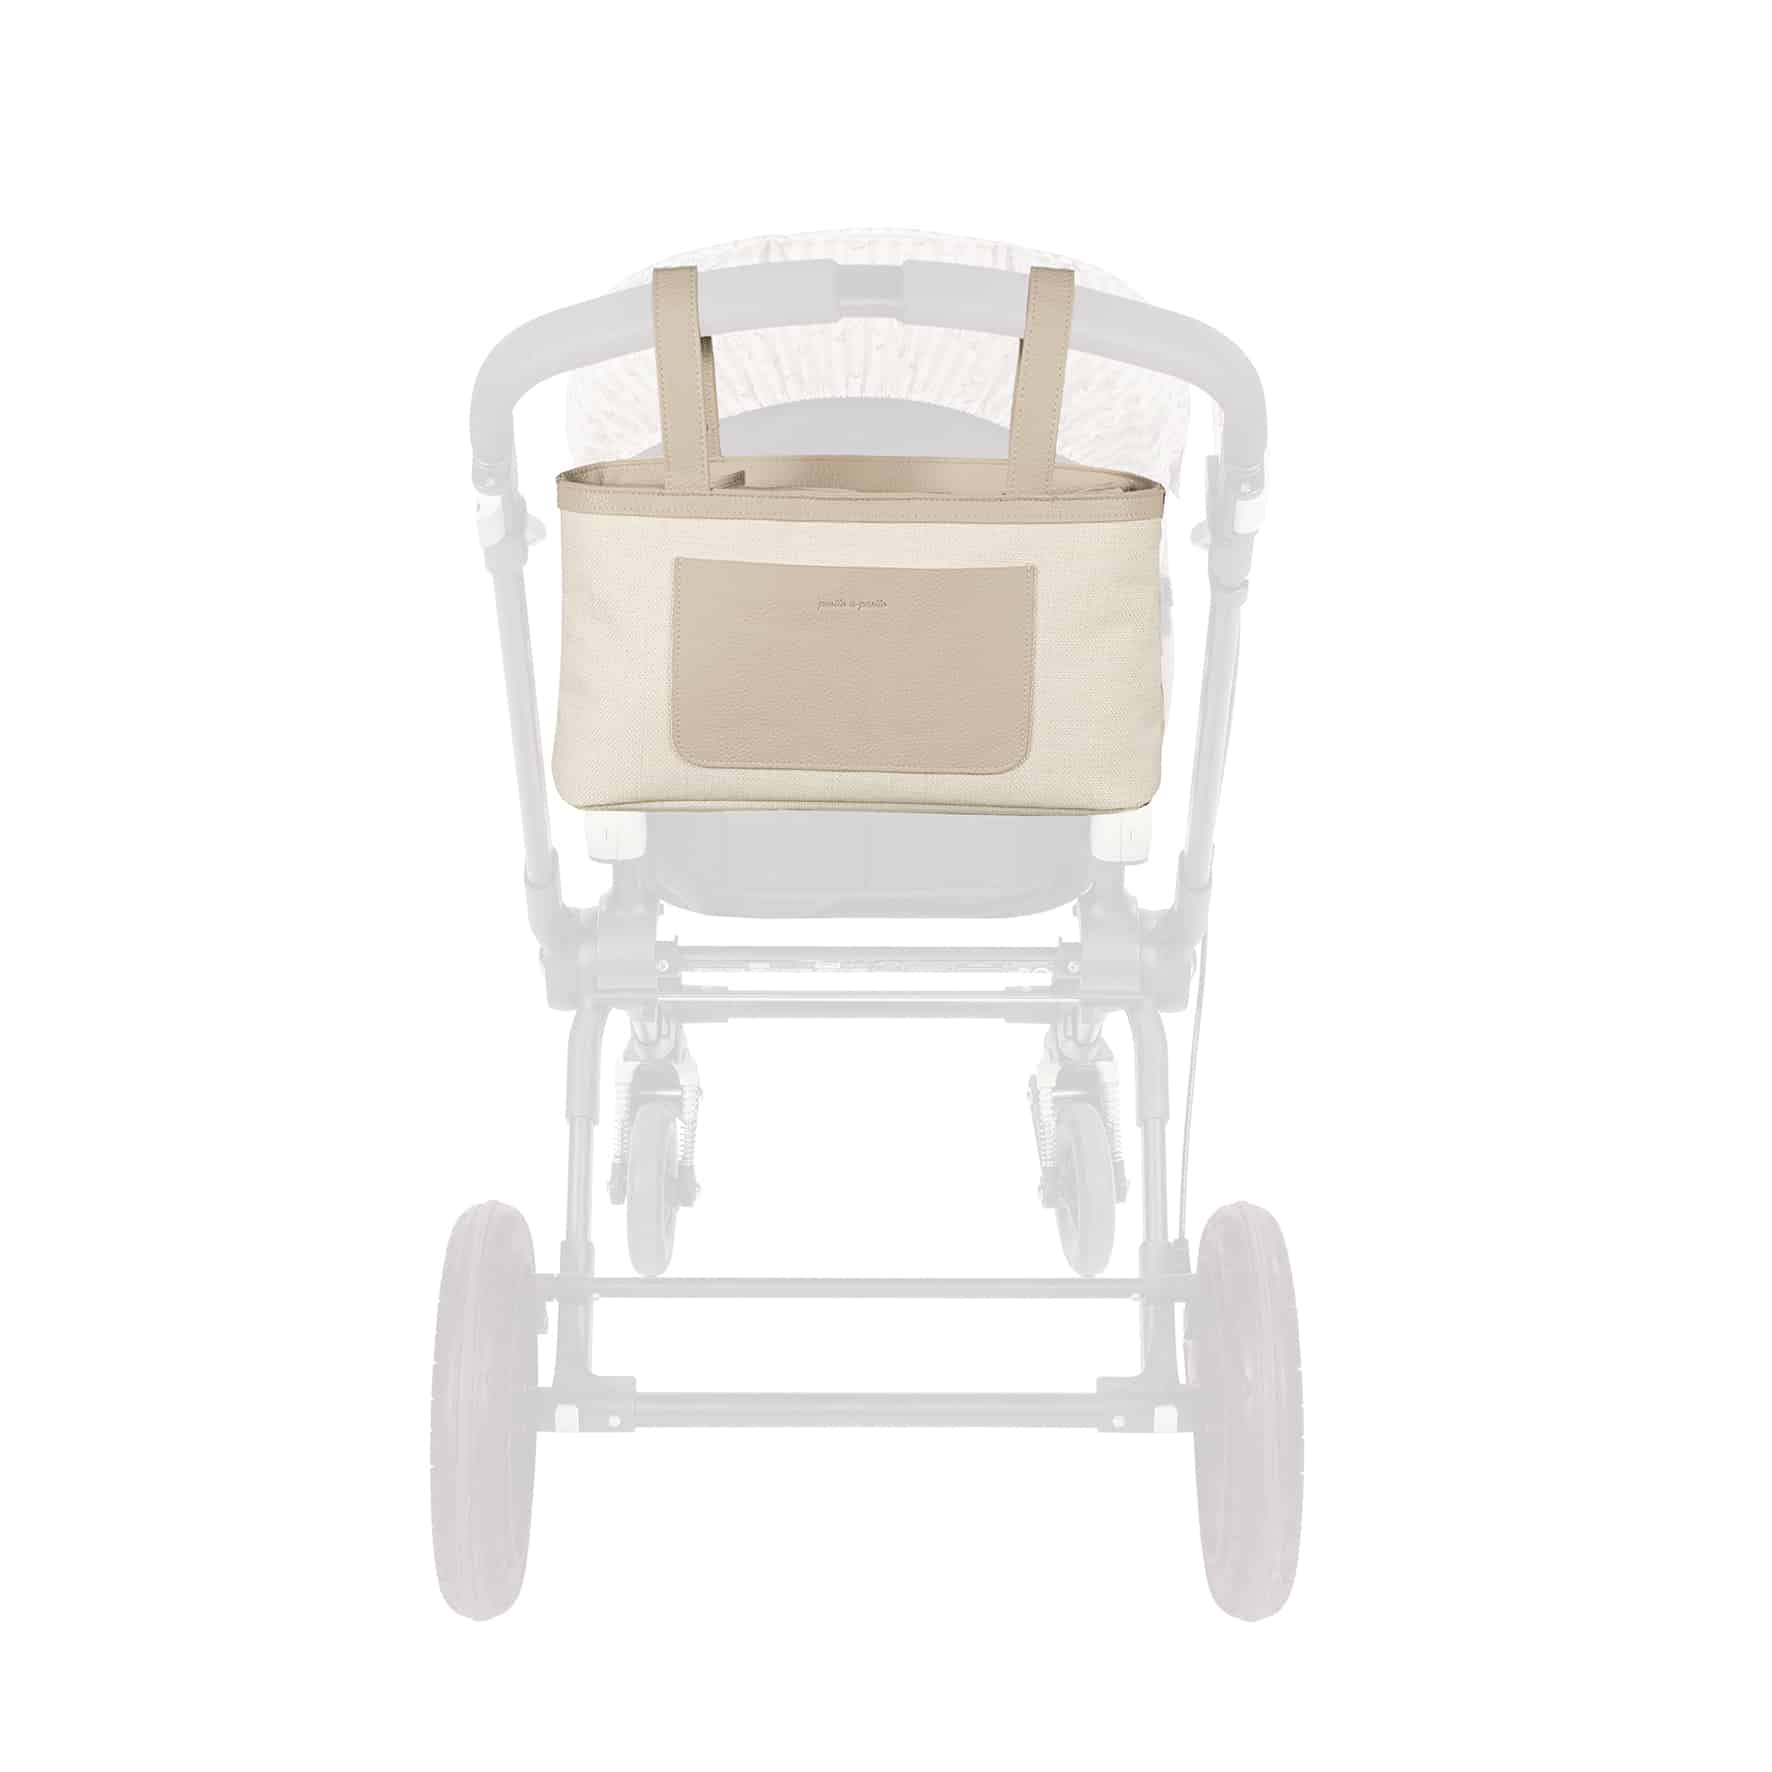 Organizador Peach Pasito a Pasito El bolso organizador Peach en tela de saco de color beige para silla de paseo es un modelo muy ligero además de ser resistente y espacioso para que puedas llevar todo lo que podrías necesitar durante el paseo de tu bebé